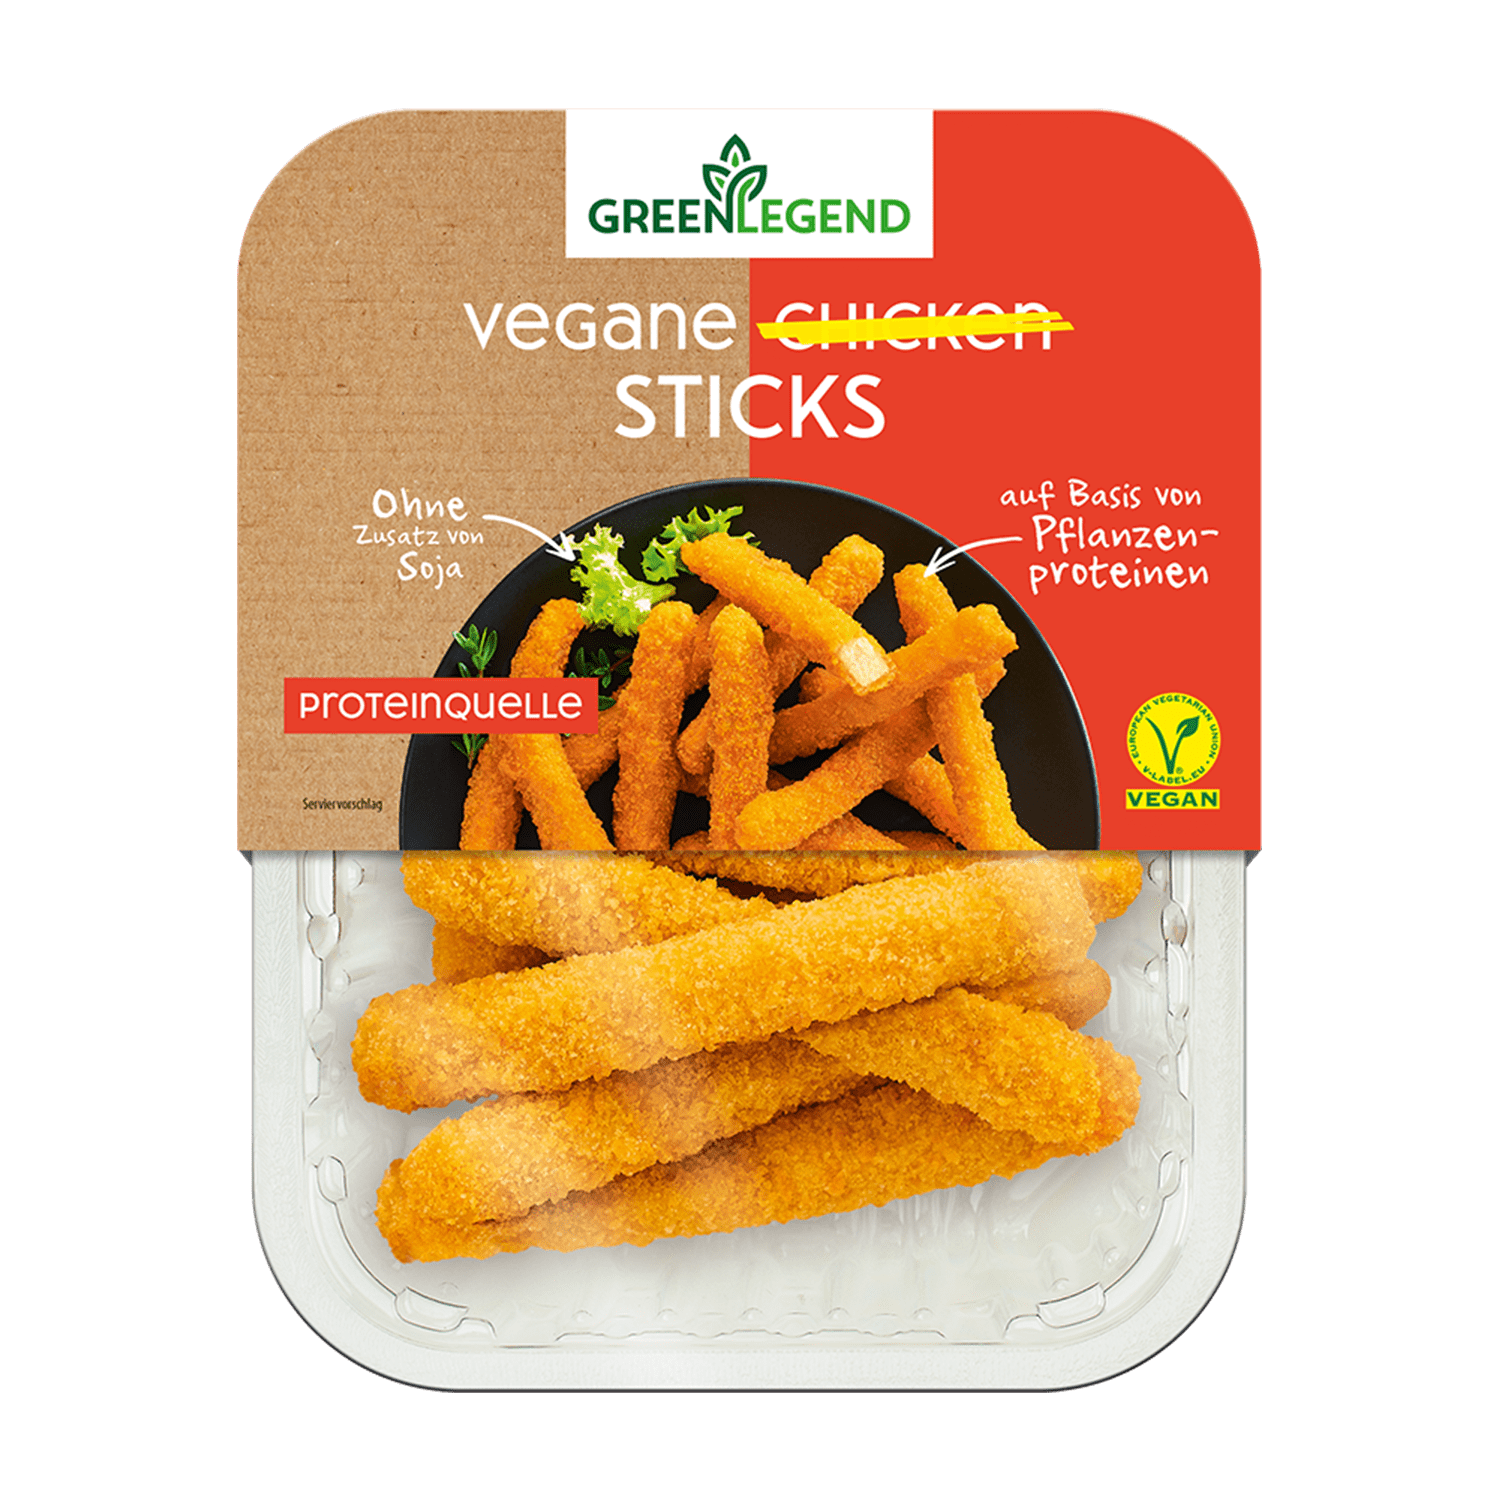 Vegane Chicken Sticks, 180g